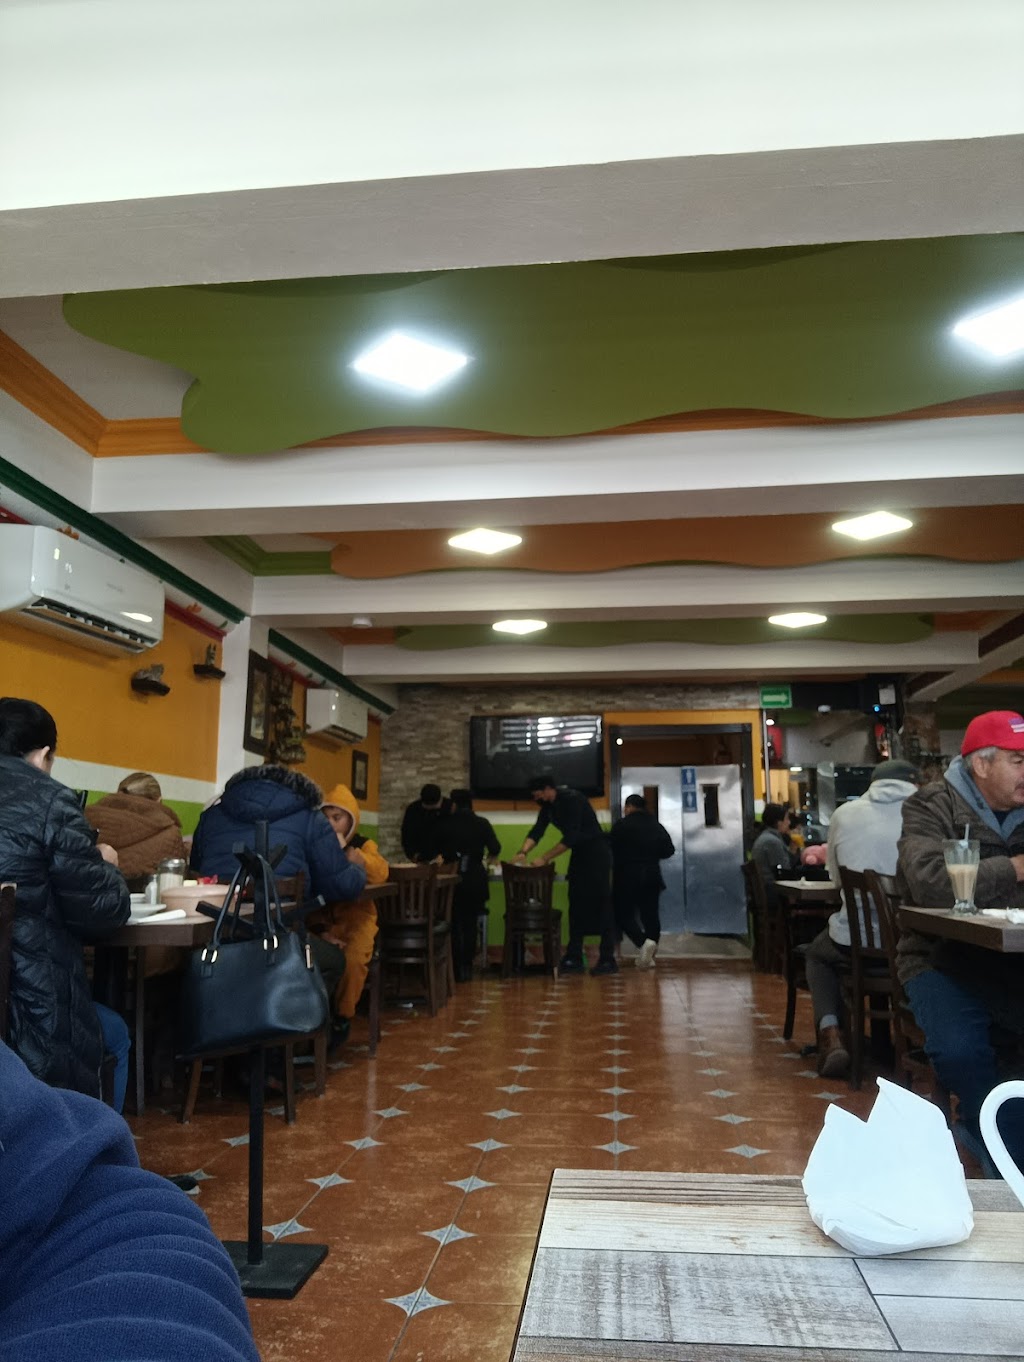 Restaurante Mi Guerrero | Av. Fco J. Mina 11174, Mariano Matamoros, 22206 Tijuana, B.C., Mexico | Phone: 664 972 7780